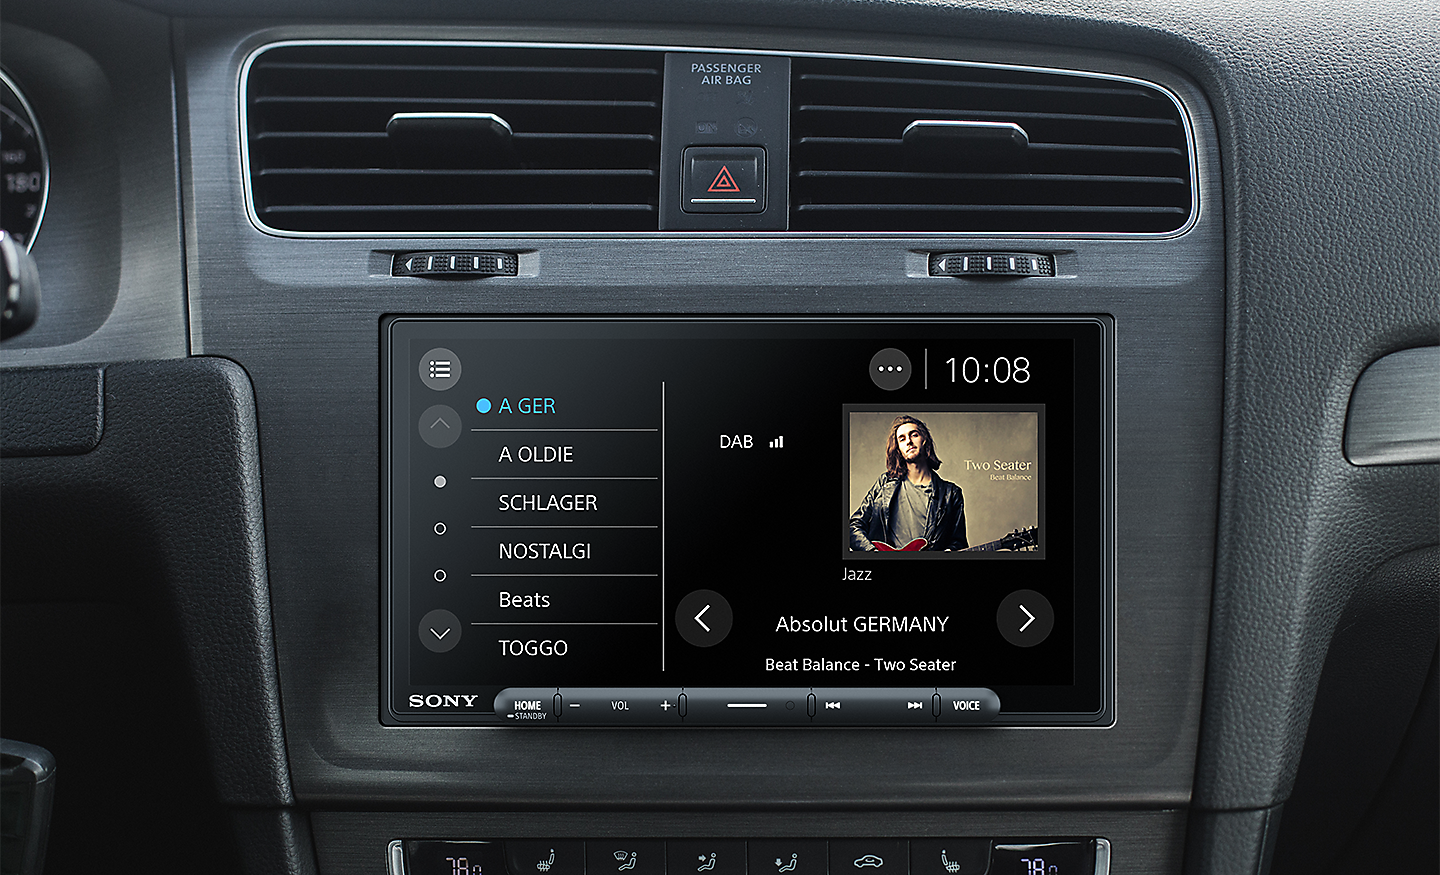 Imagem do XAV-AX6050 num tablier com interface de rádio DAB no ecrã